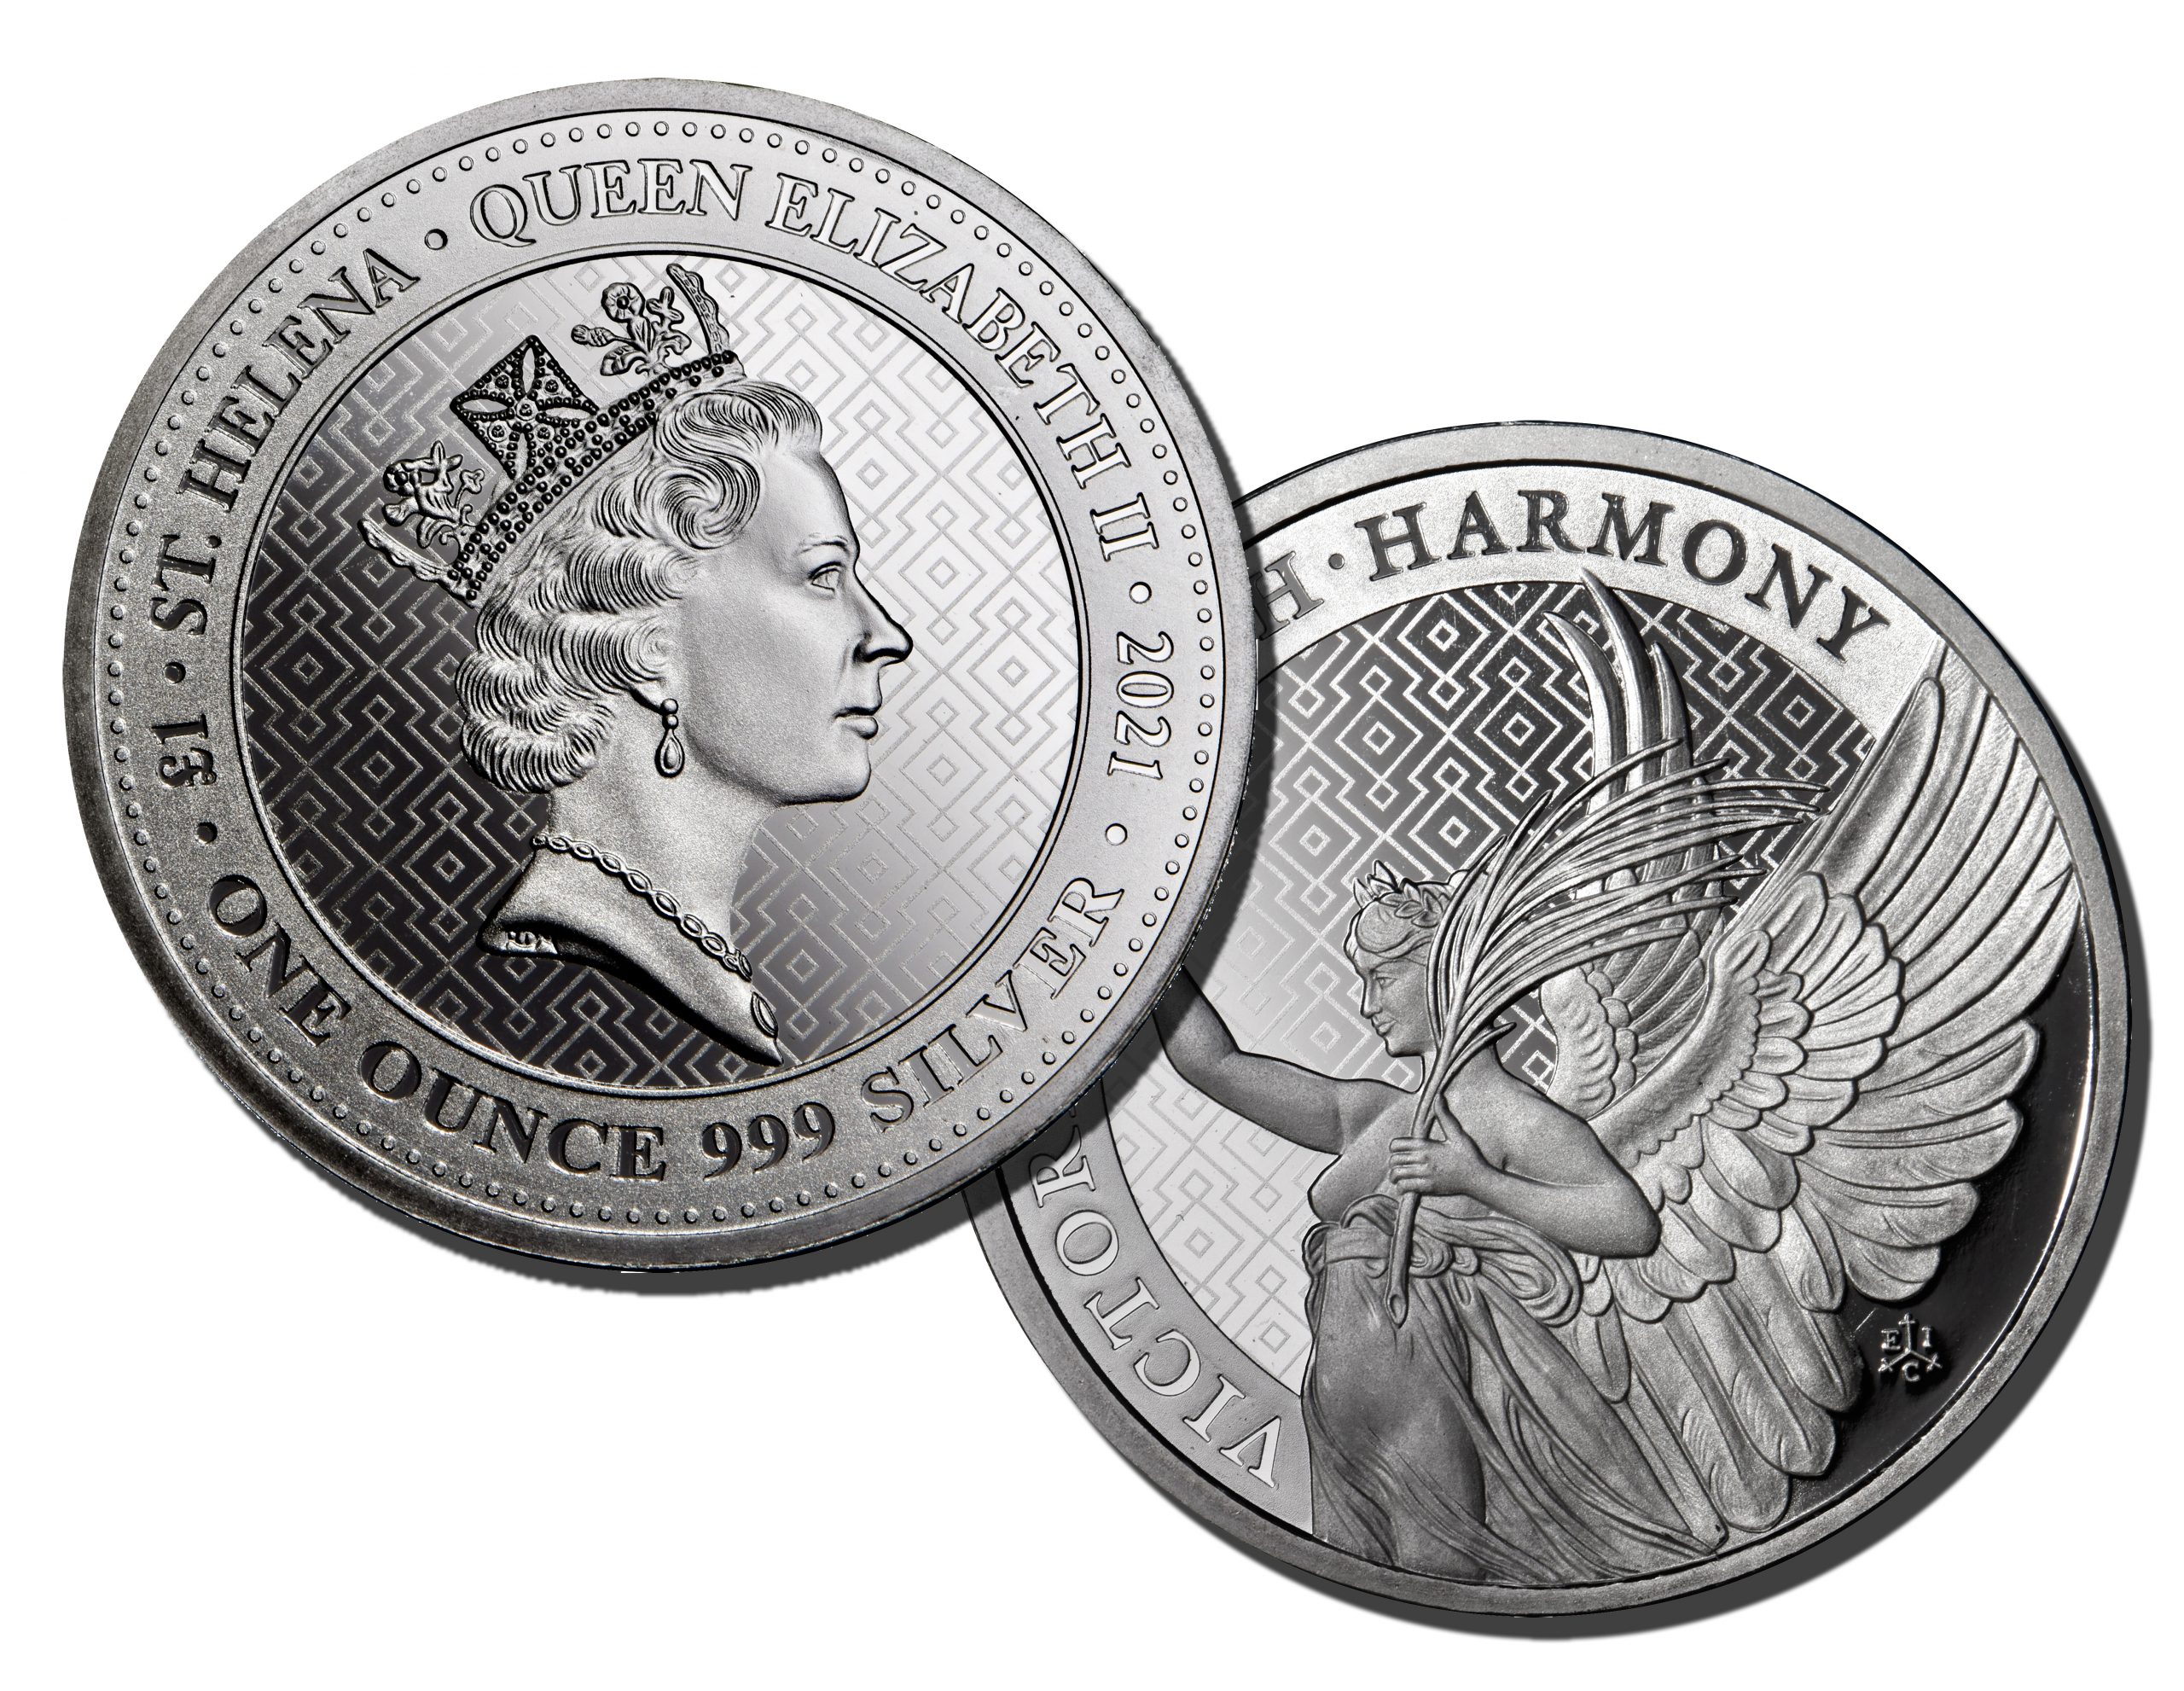 2021 セントヘレナ 女王の美徳「勝利」 1oz 純銀 fine silver - 旧貨幣